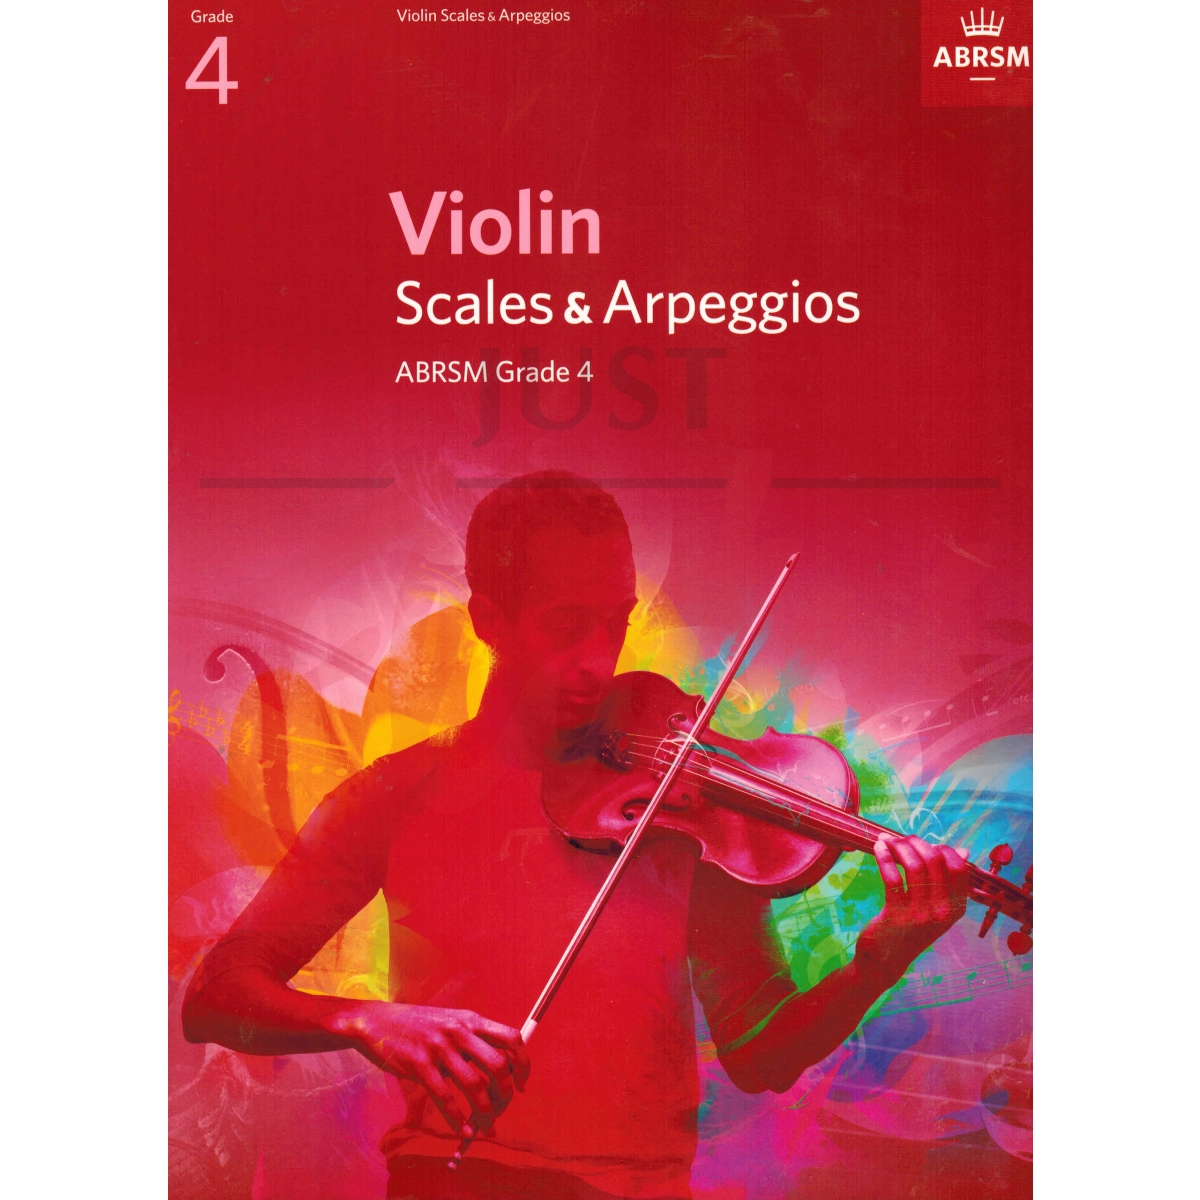 Scales and Arpeggios for Violin Grade 4